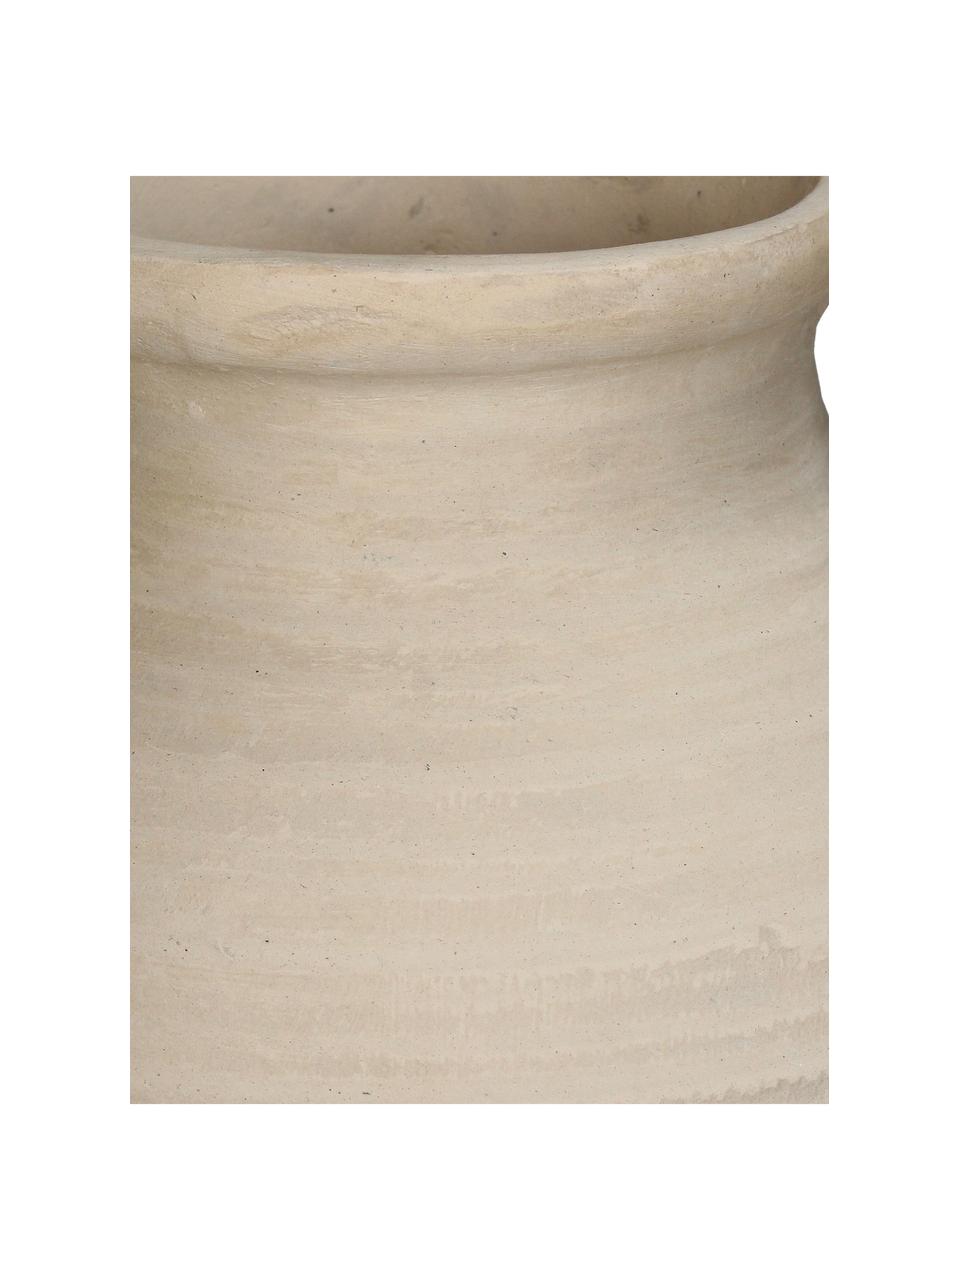 Vase décoratif artisanal en papier mâché Raw, Papier mâché, >30% de matériaux recyclés, Beige clair, larg. 25 x haut. 26 cm